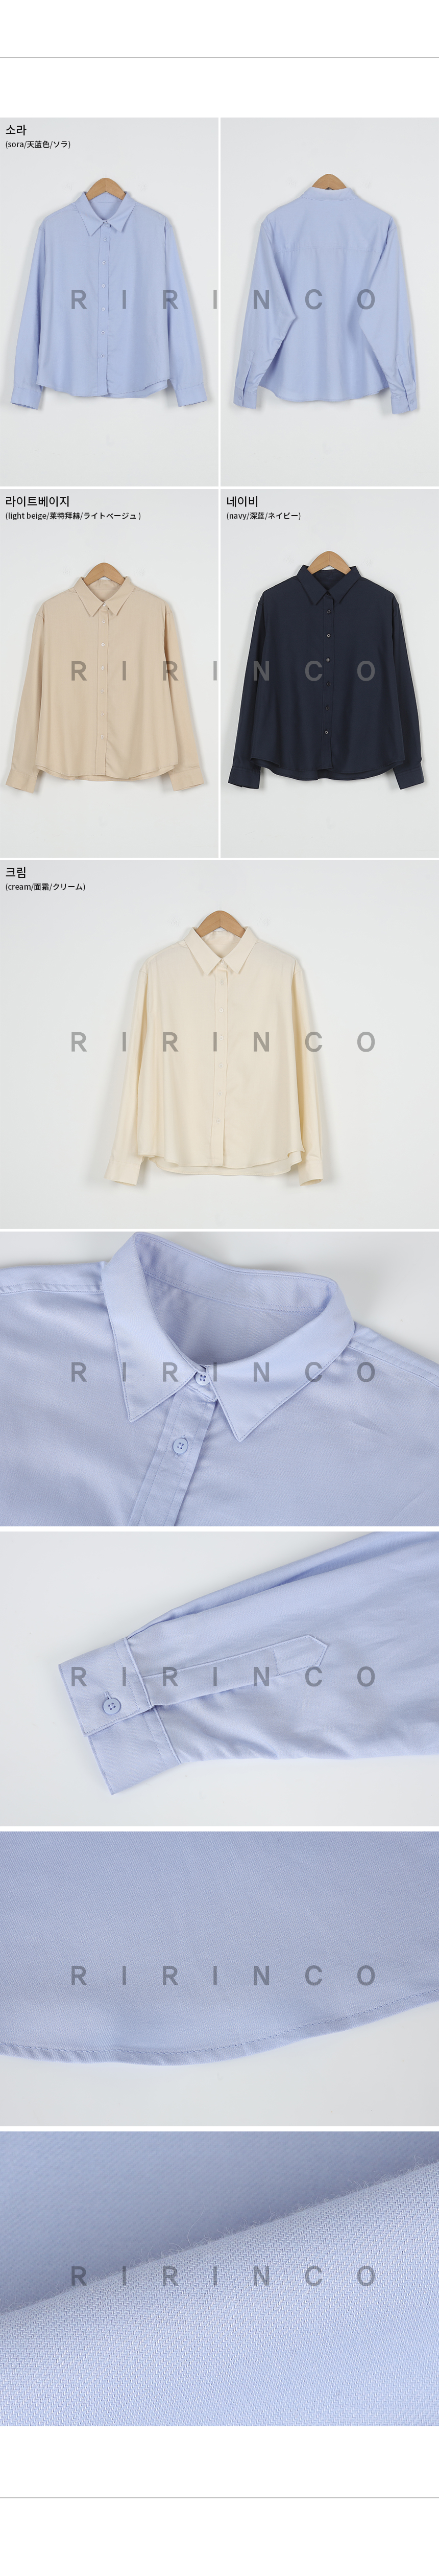 RIRINCO カラーネックドロップショルダーシャツ